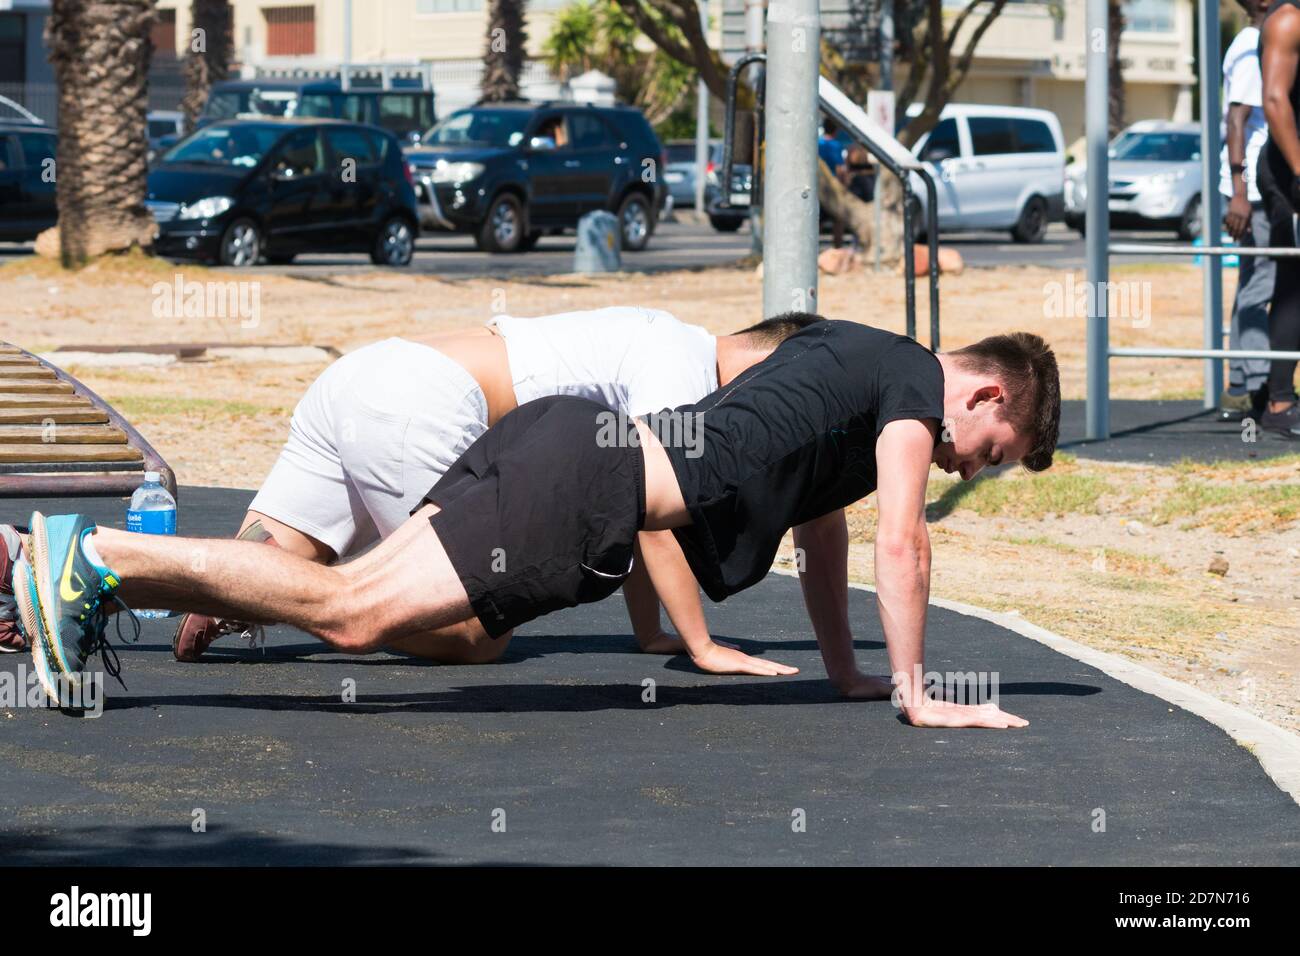 Zwei junge Männer tun Liegestütze im Freien während einer Übung oder Gym Training Session Konzept Gesundheit und Fitness Lifestyle Stockfoto